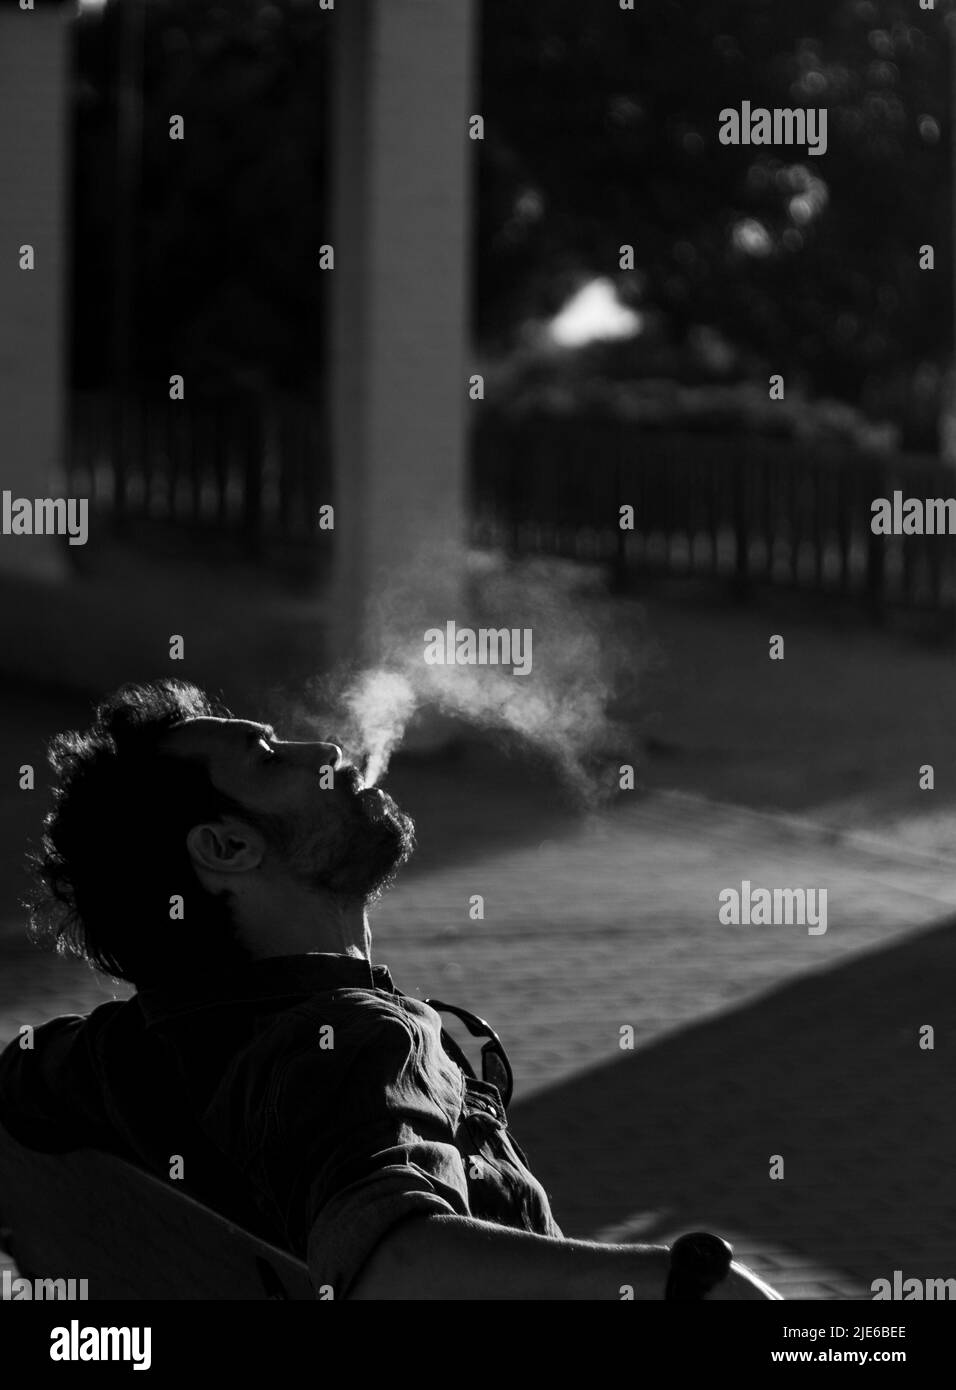 homme attentif fumant une cigarette seule dans le noir et blanc foyer sélectif Banque D'Images